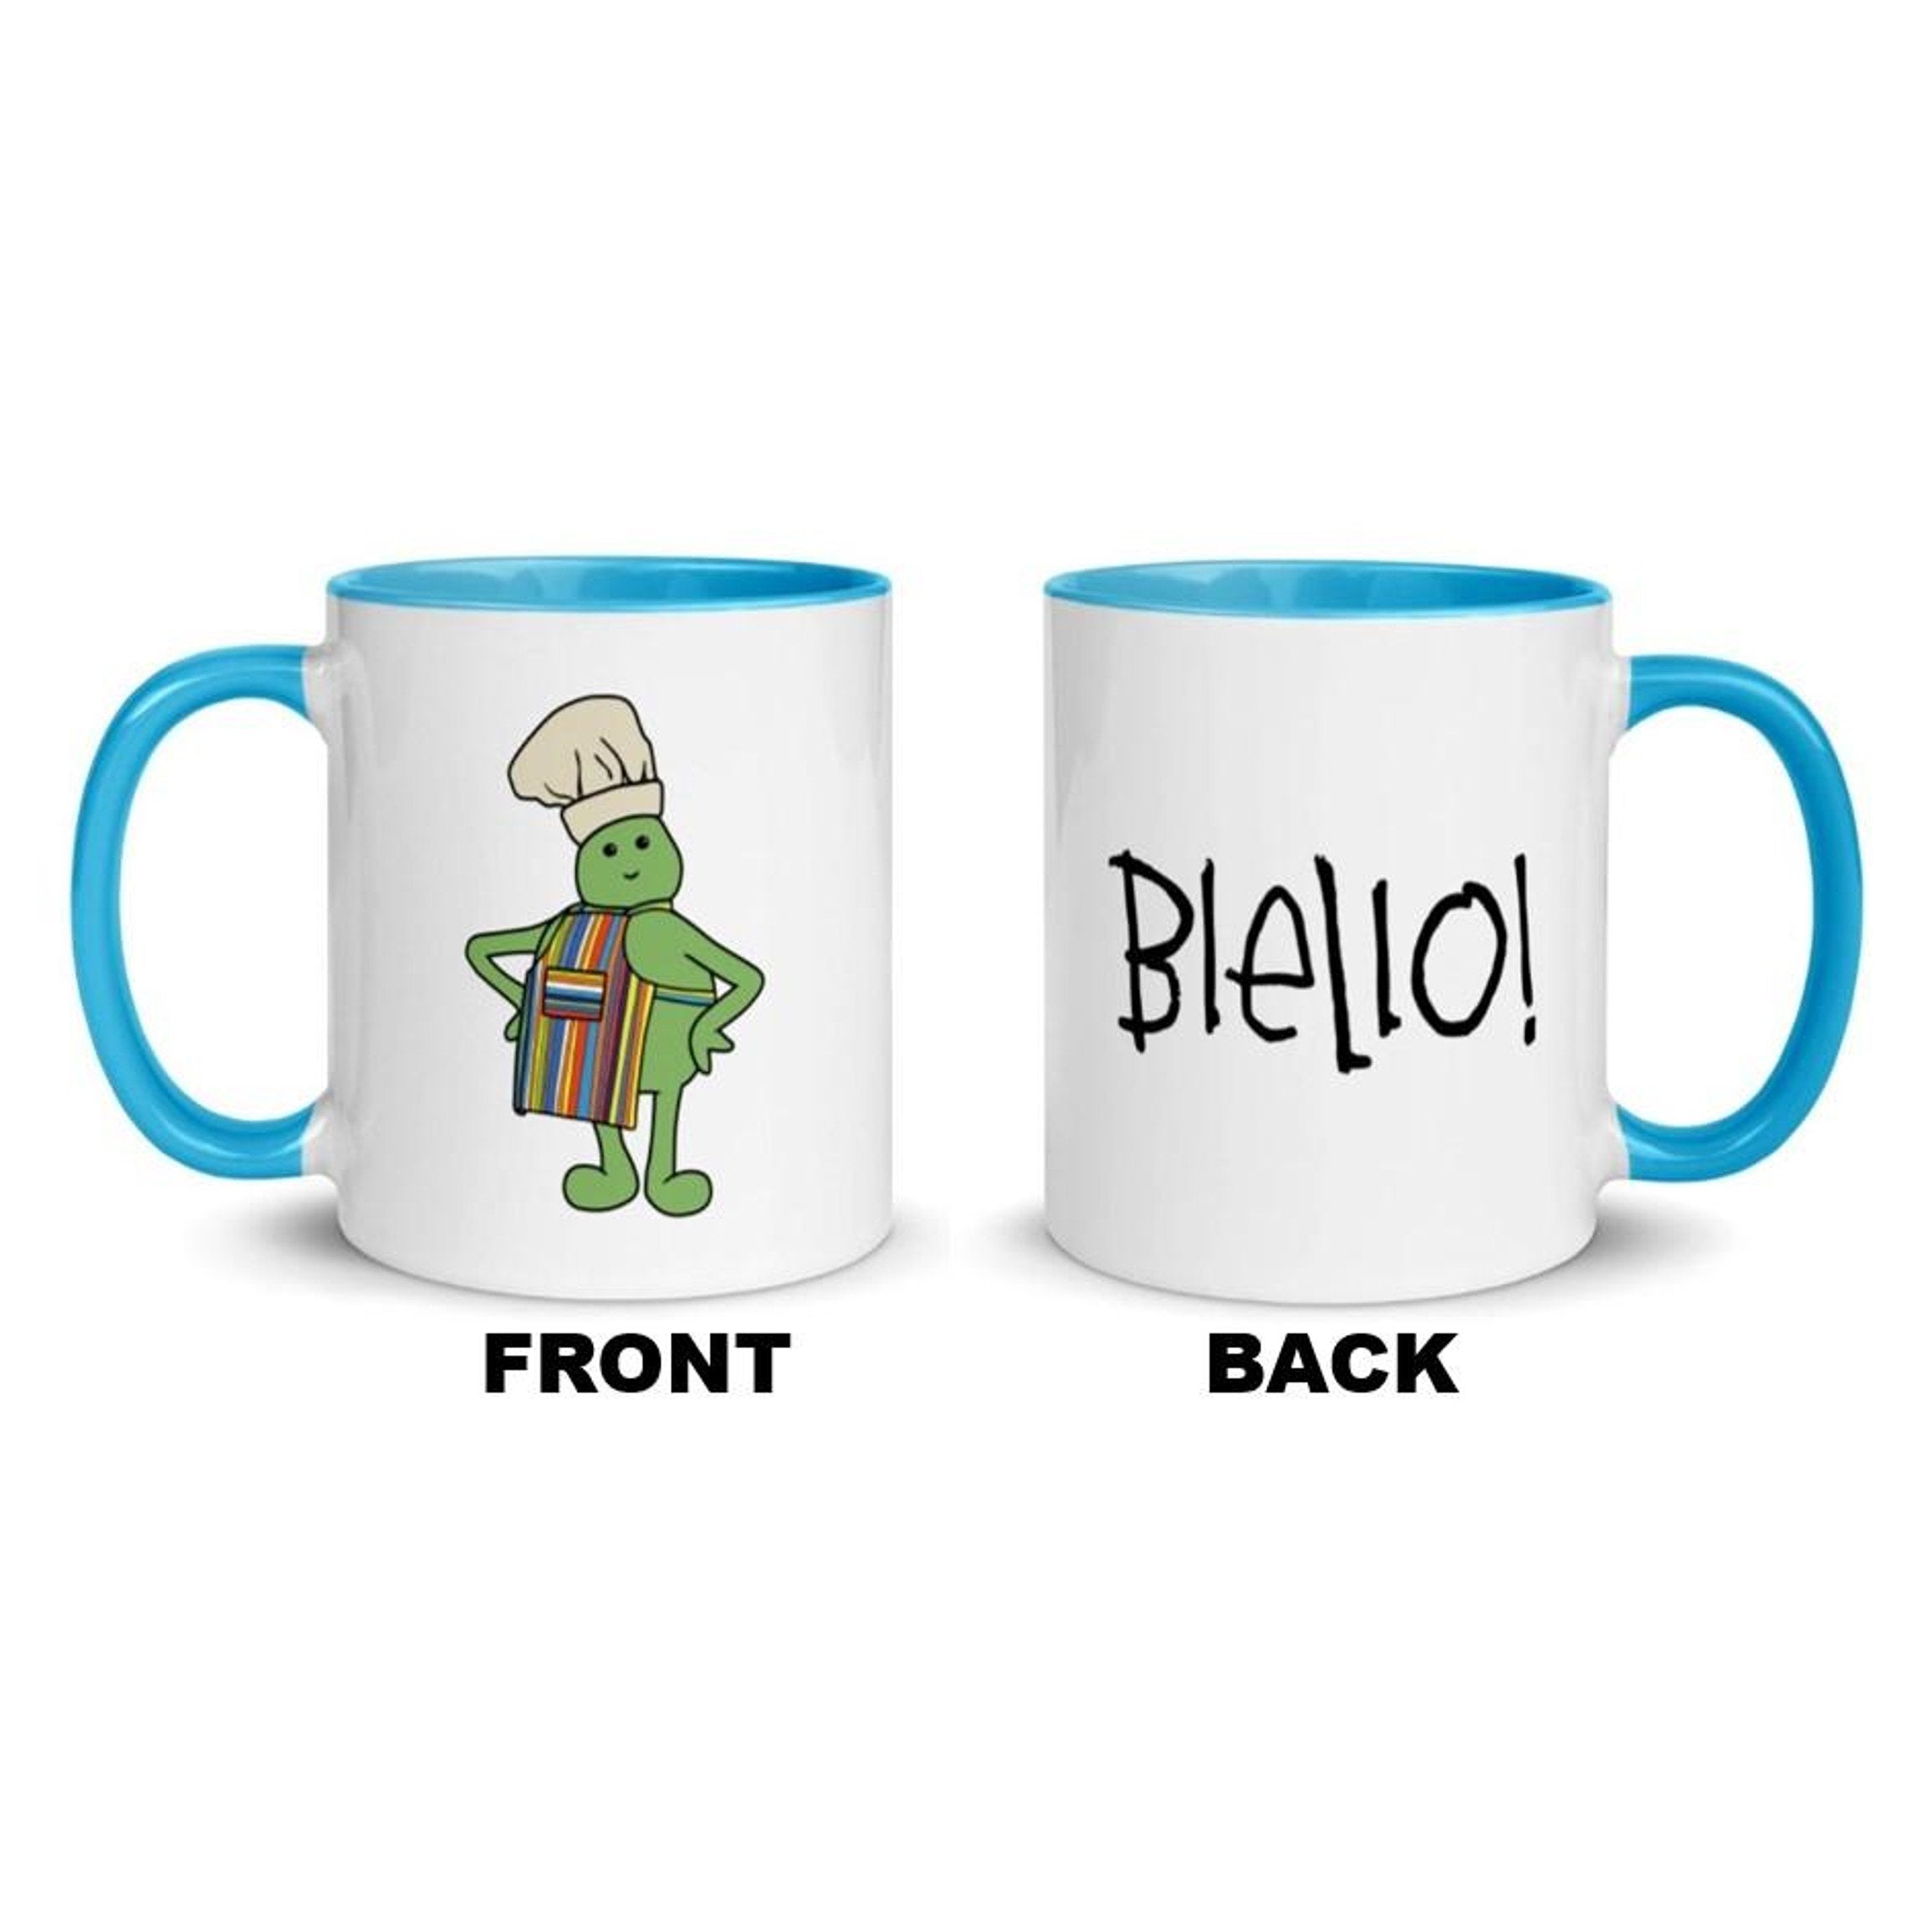 Blello Mug